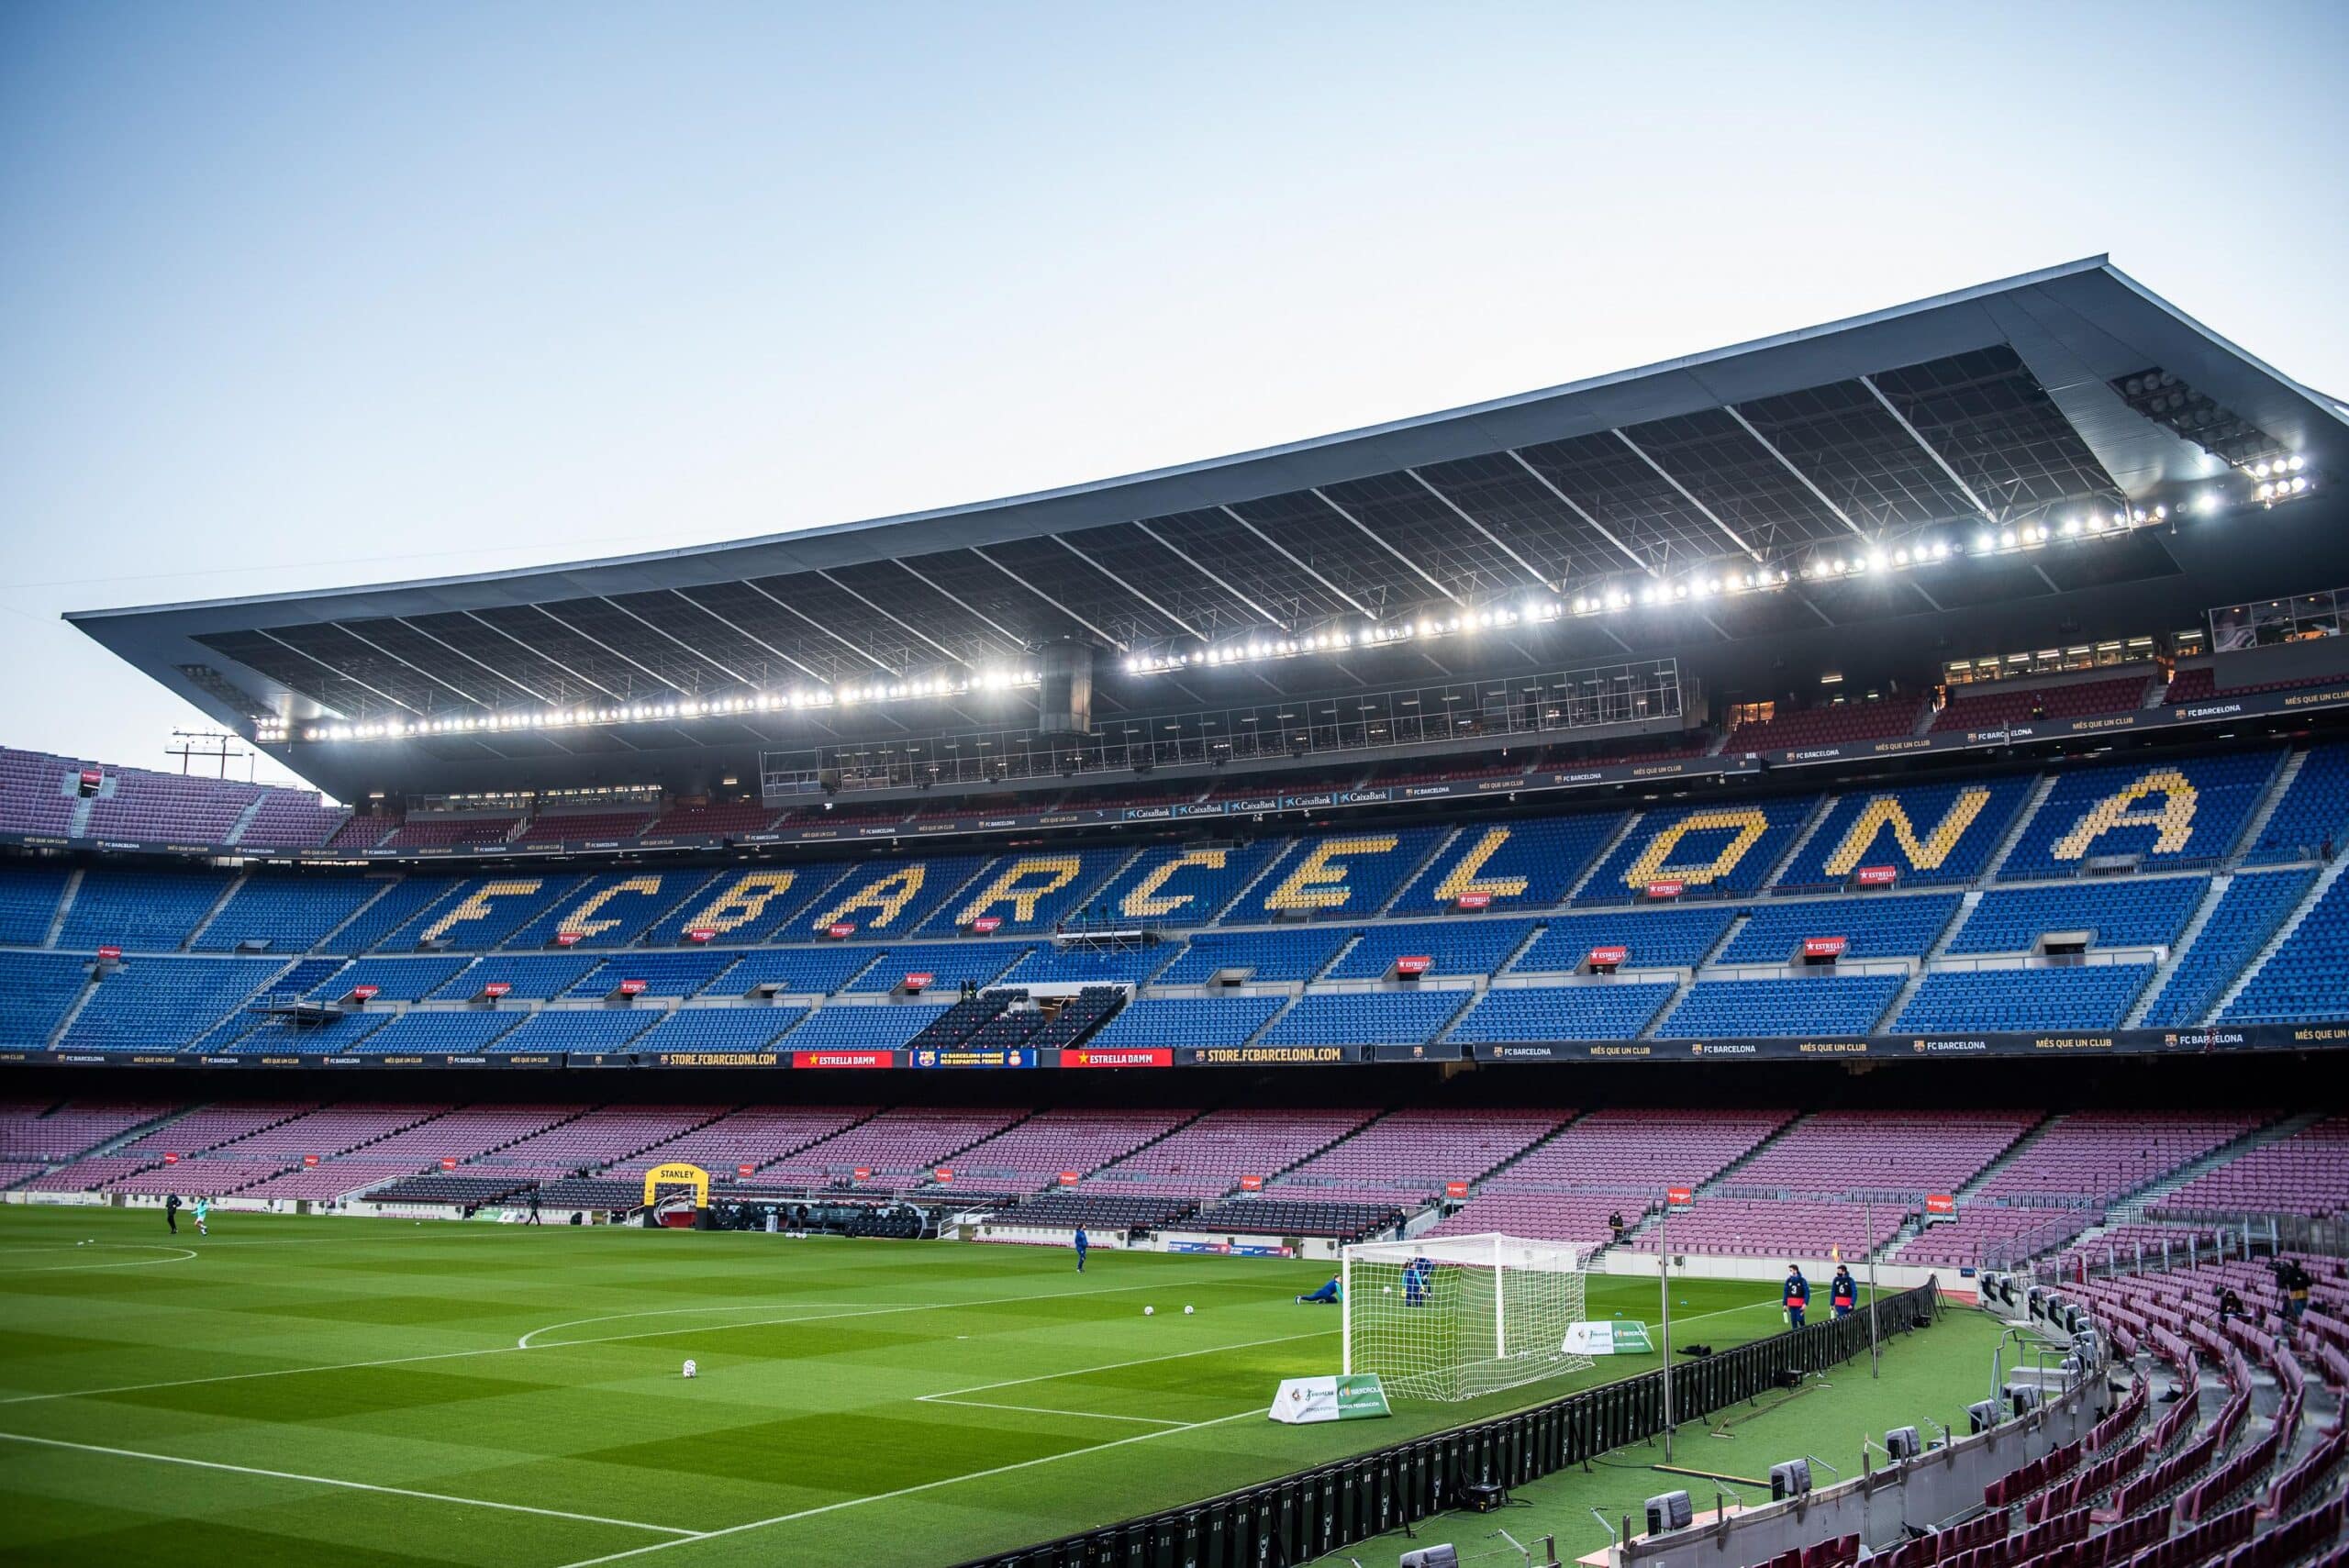 El Barça, condenado a indemnizar a un proveedor por no cumplir el contrato amparándose en la pandemia